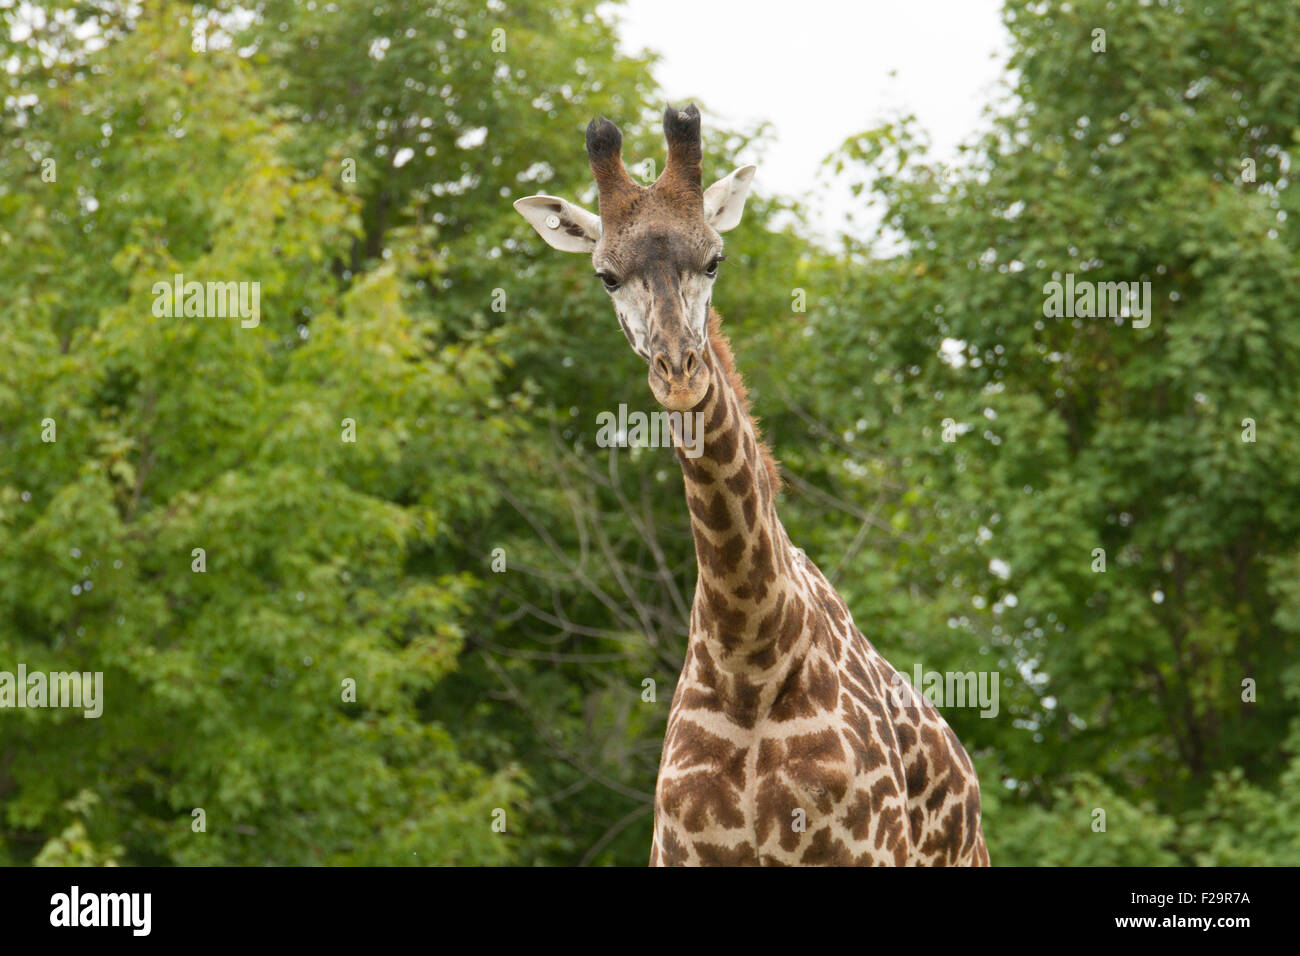 Masai giraffe looking at camera Stock Photo